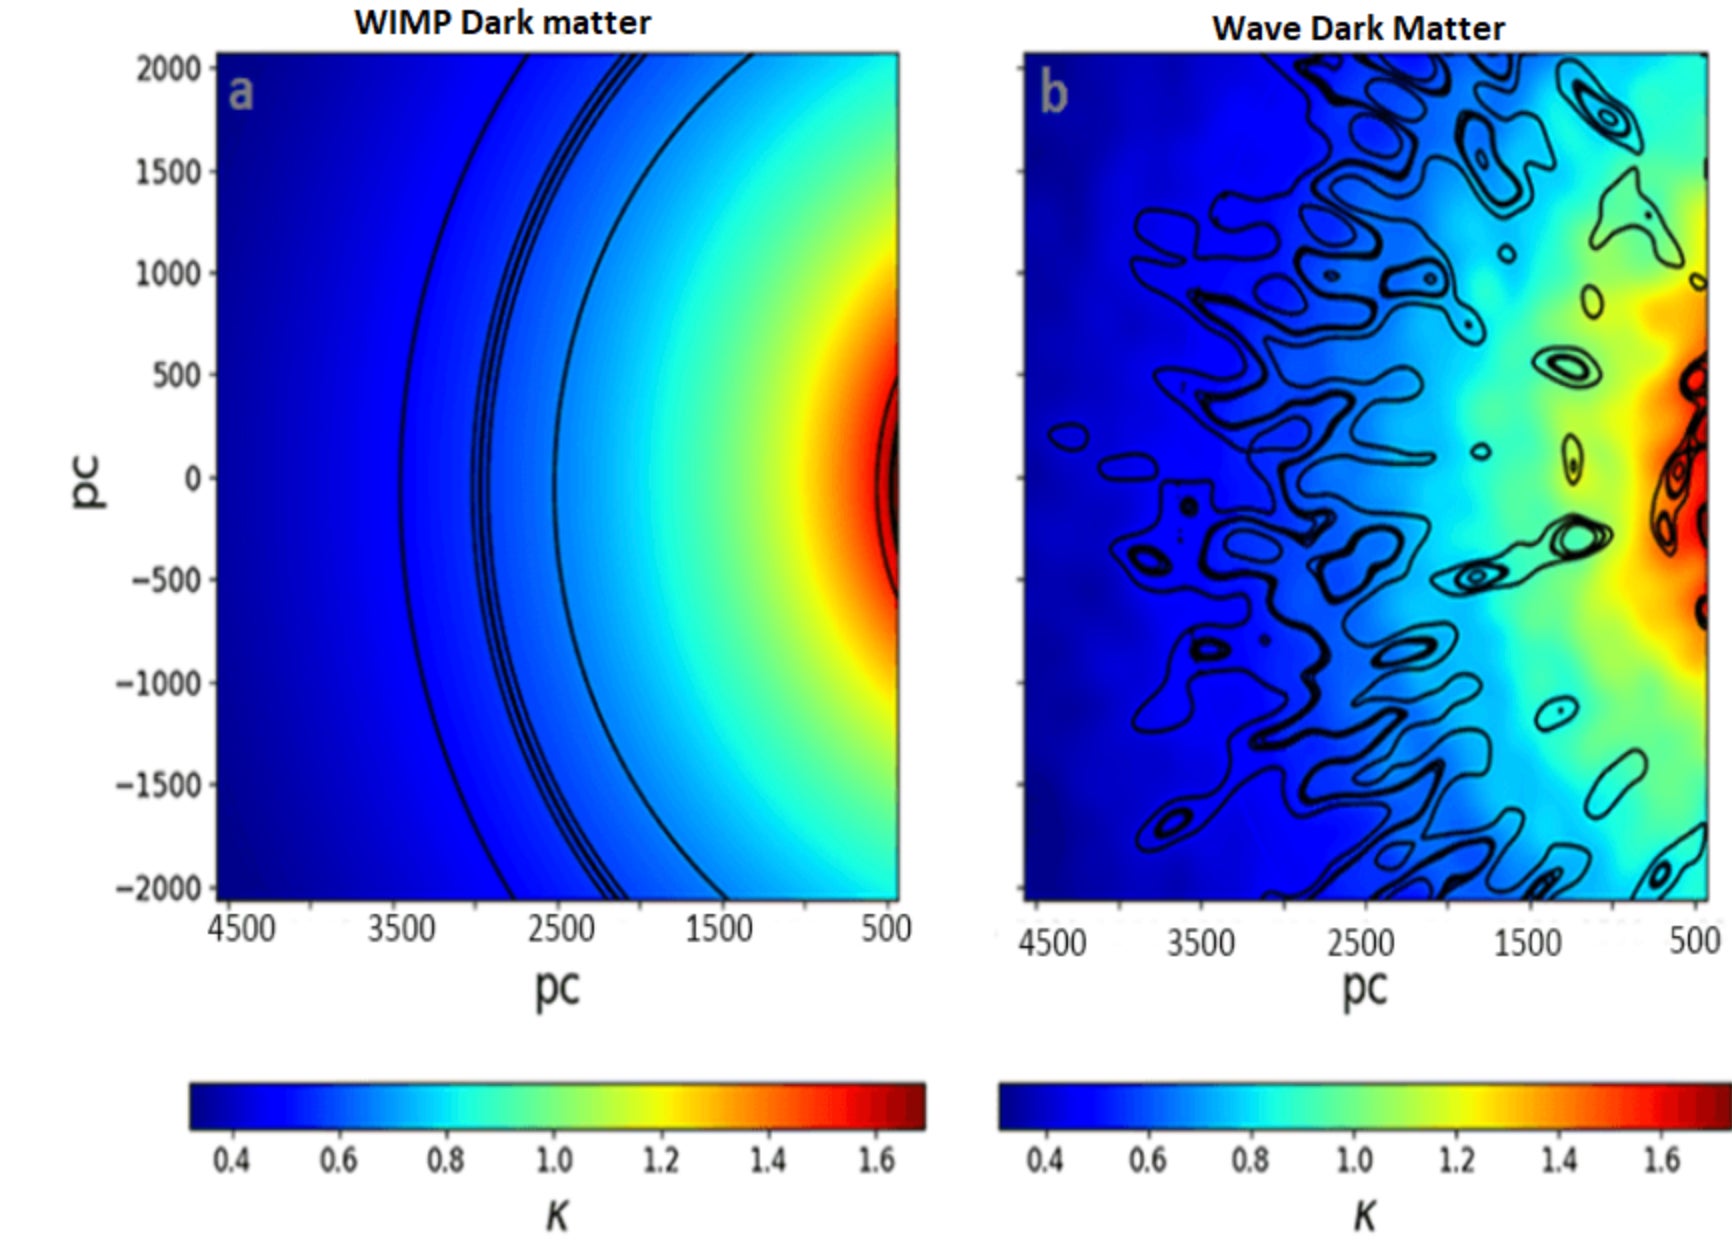 Bordes simulados de anillos de Einstein en WIMP (izquierda) y modelos de materia oscura en forma de ondas (derecha).